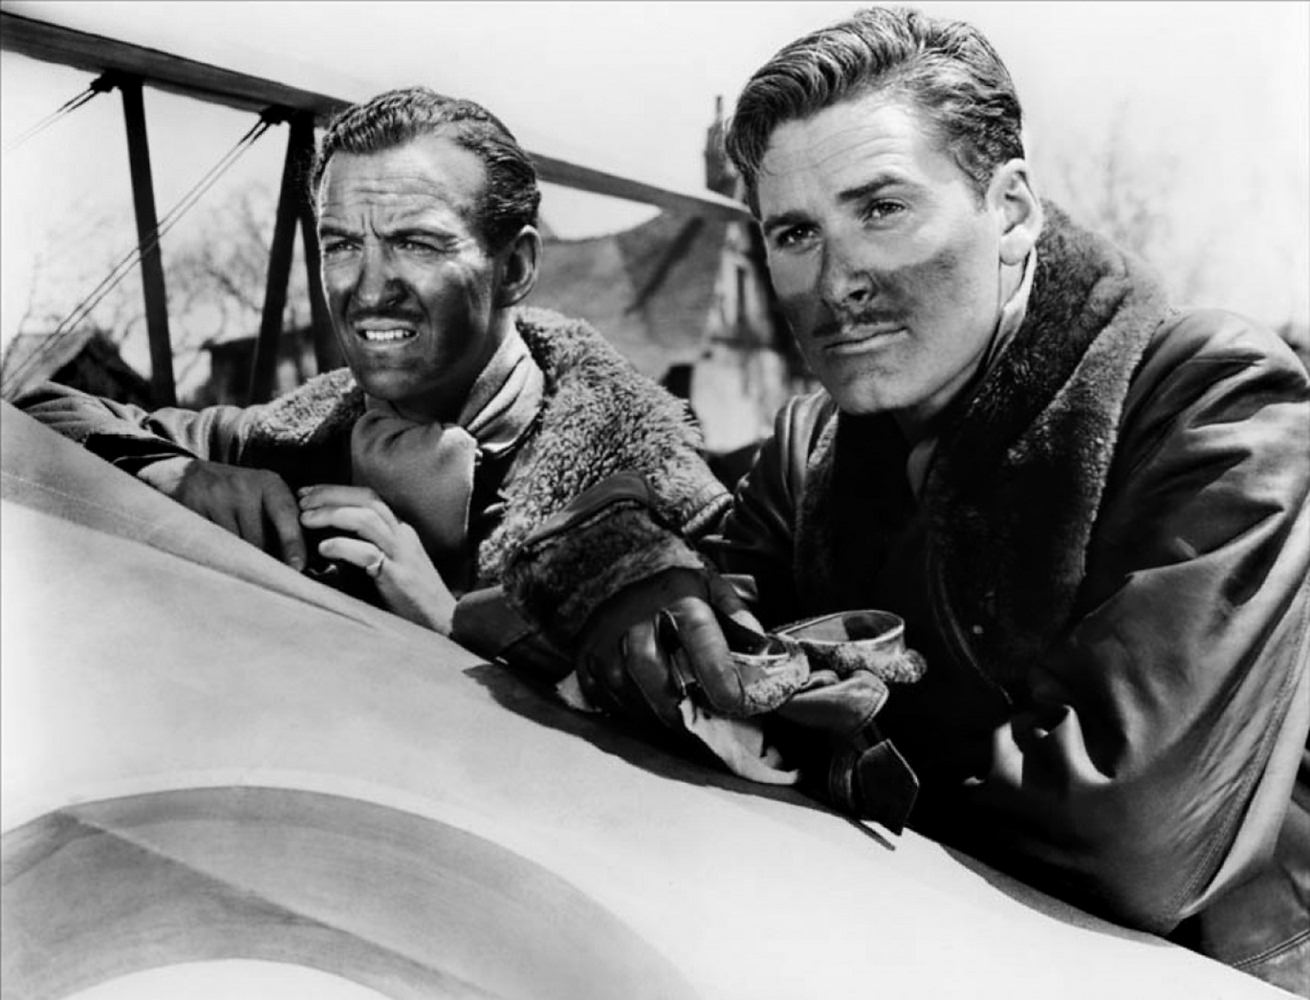 David Niven and Errol Flynn in The dawn patrol, 1938